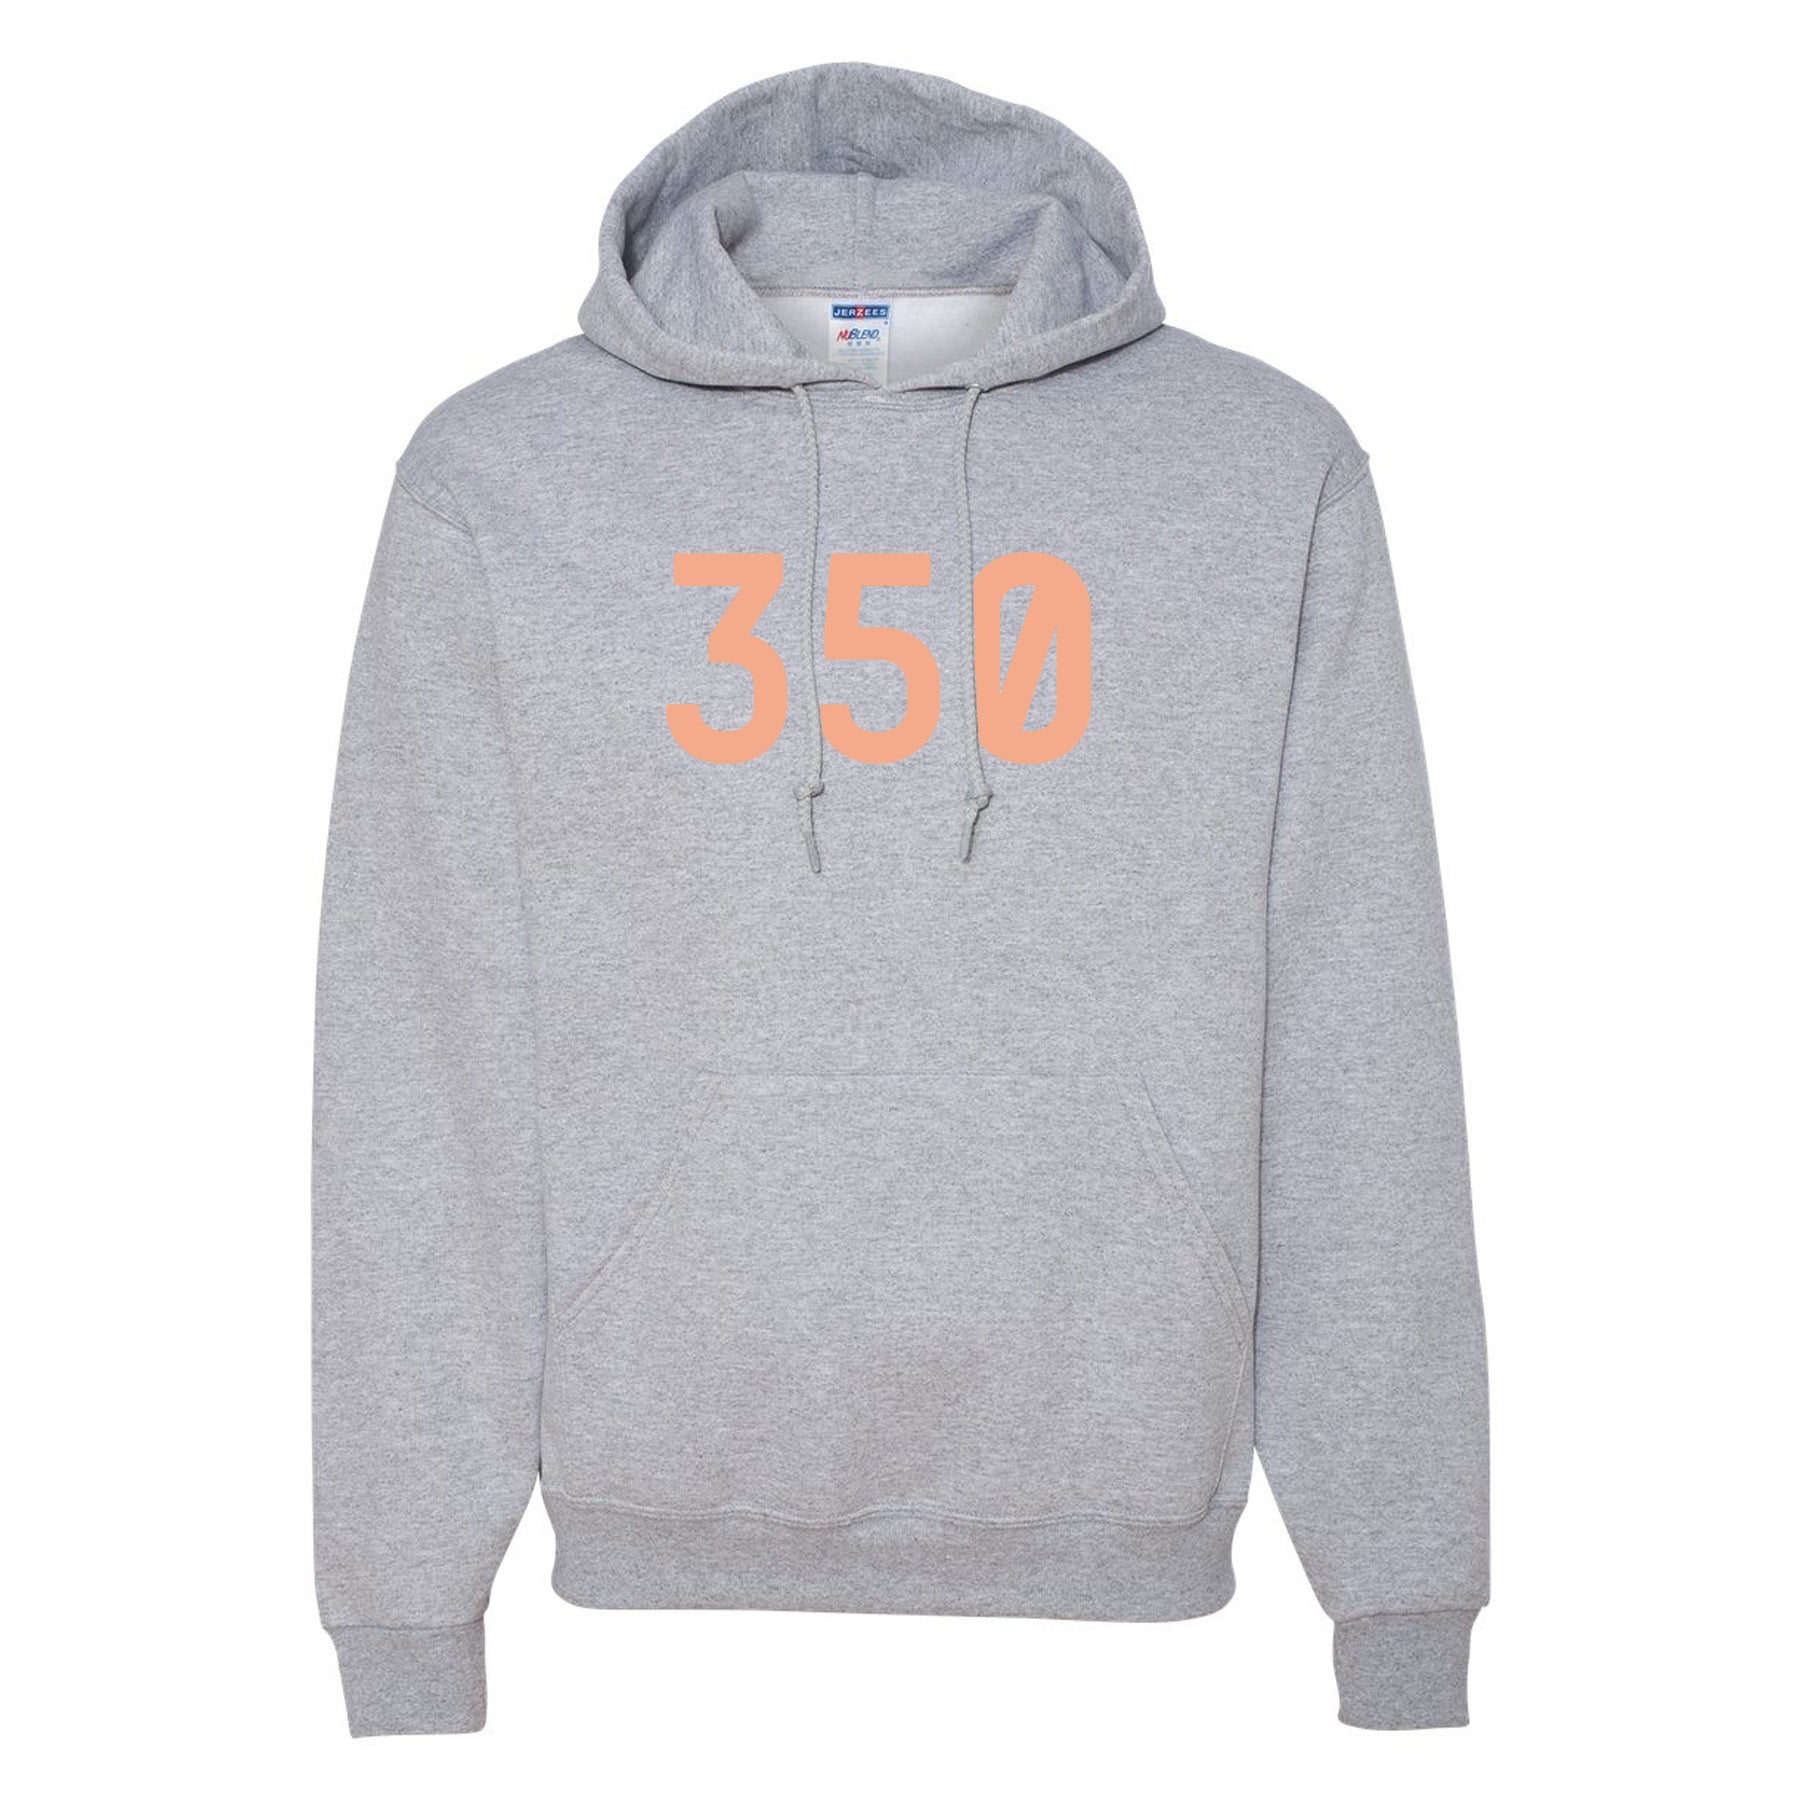 yeezy boost 350 hoodie